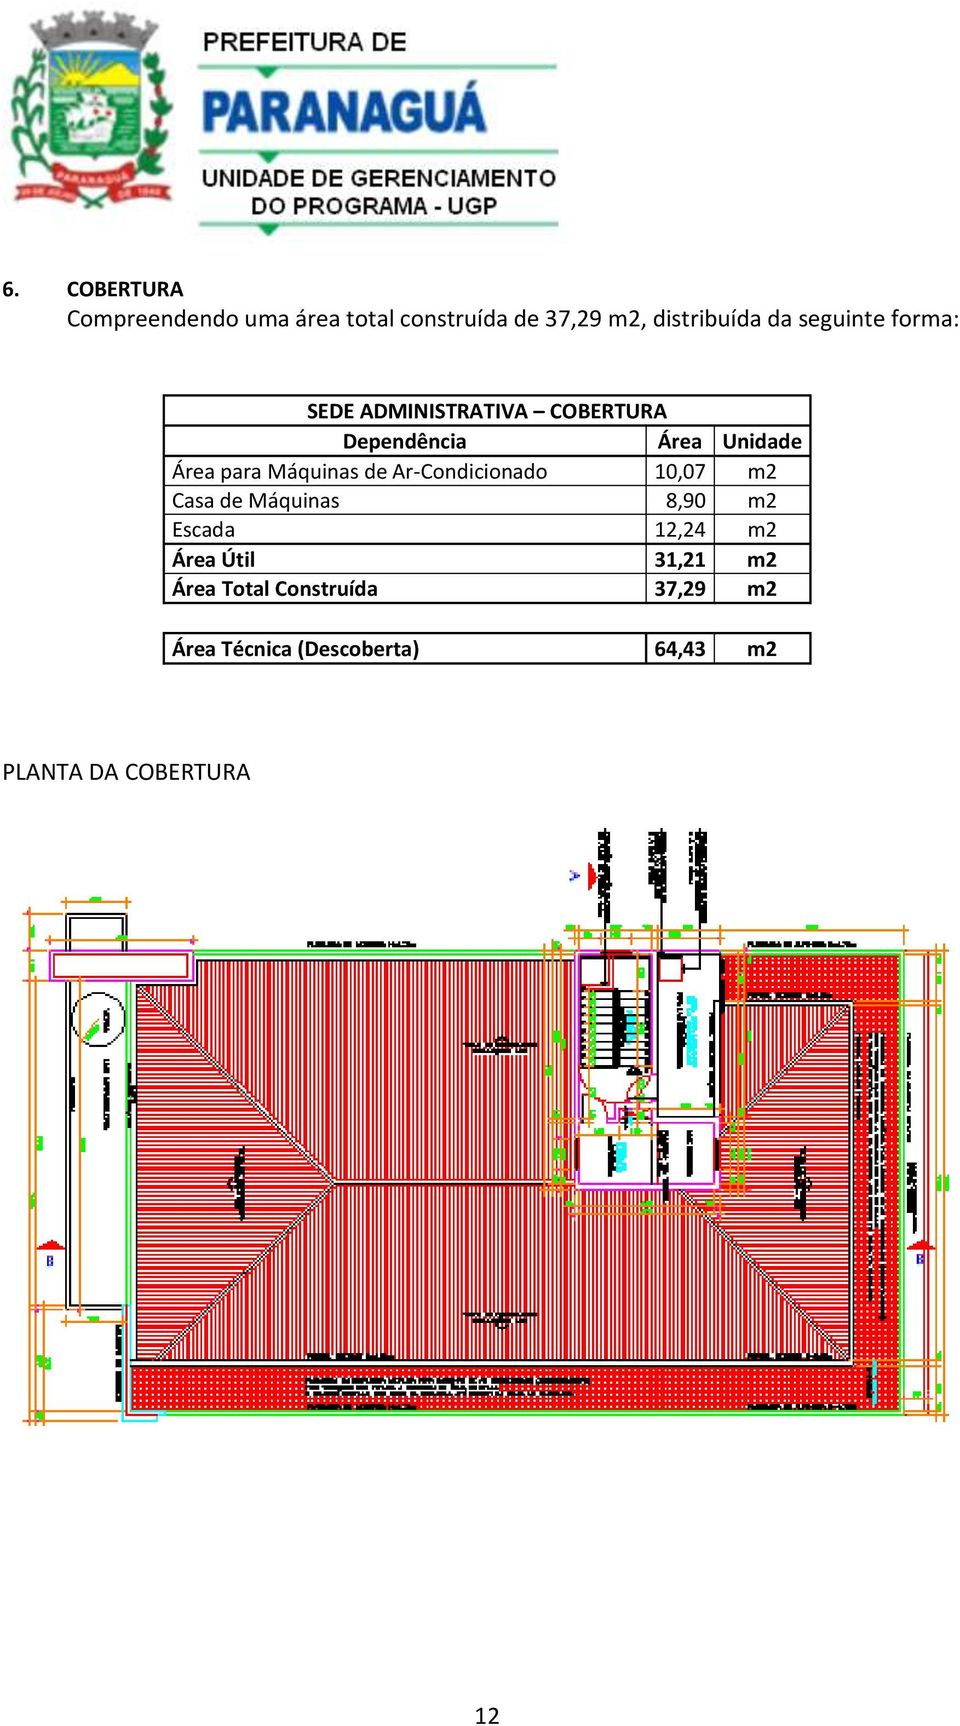 Máquinas de Ar-Condicionado 10,07 m2 Casa de Máquinas 8,90 m2 Escada 12,24 m2 Área